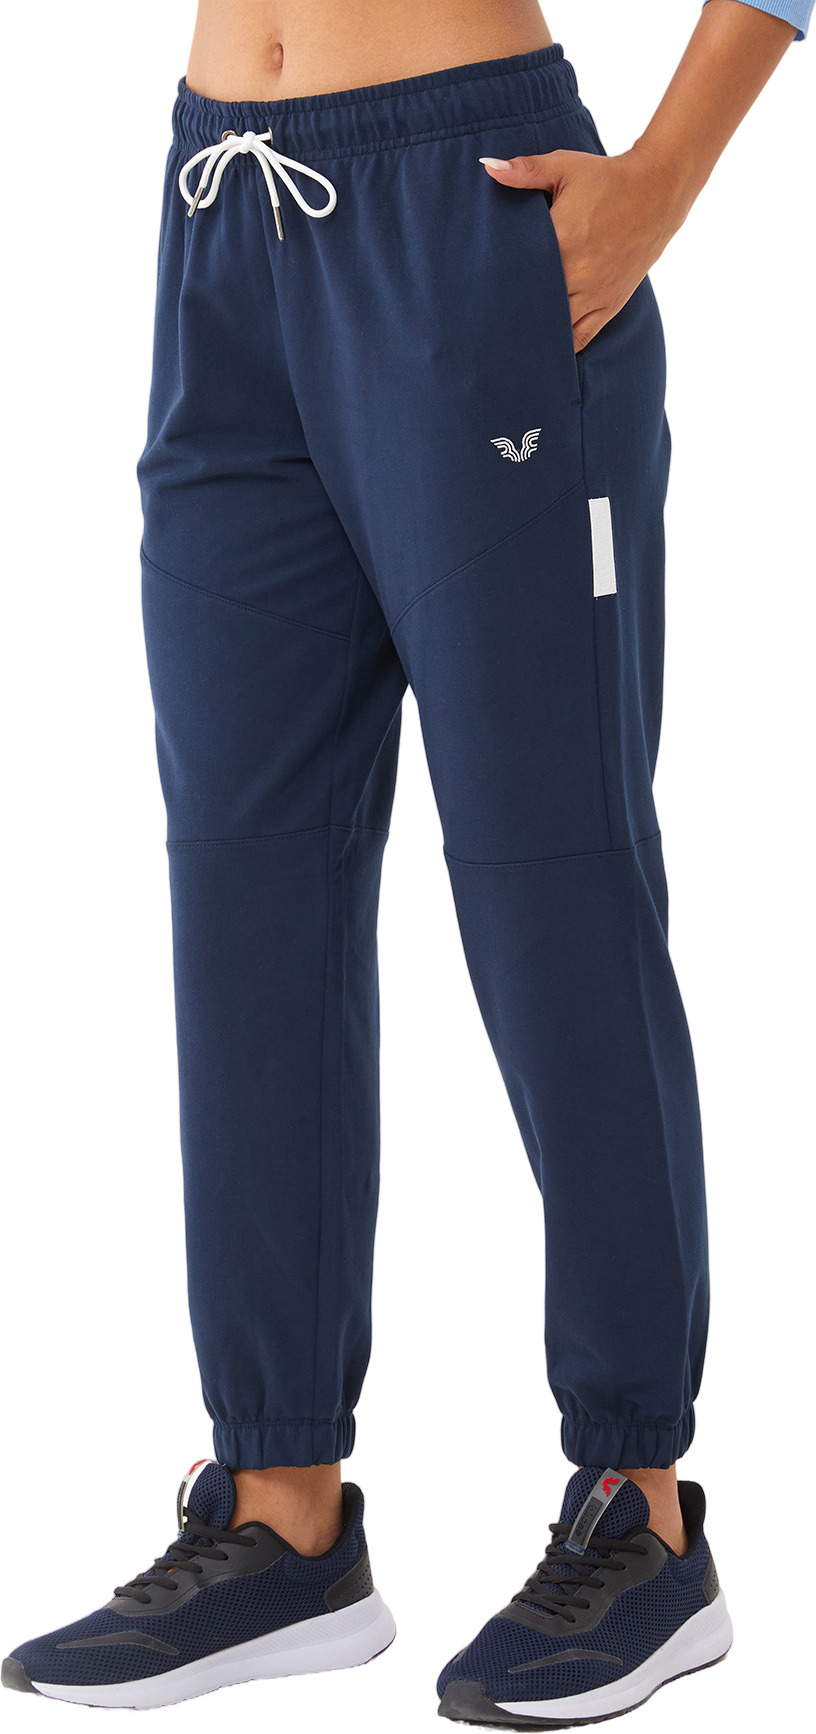 Спортивные брюки женские Bilcee Sports pants синие S